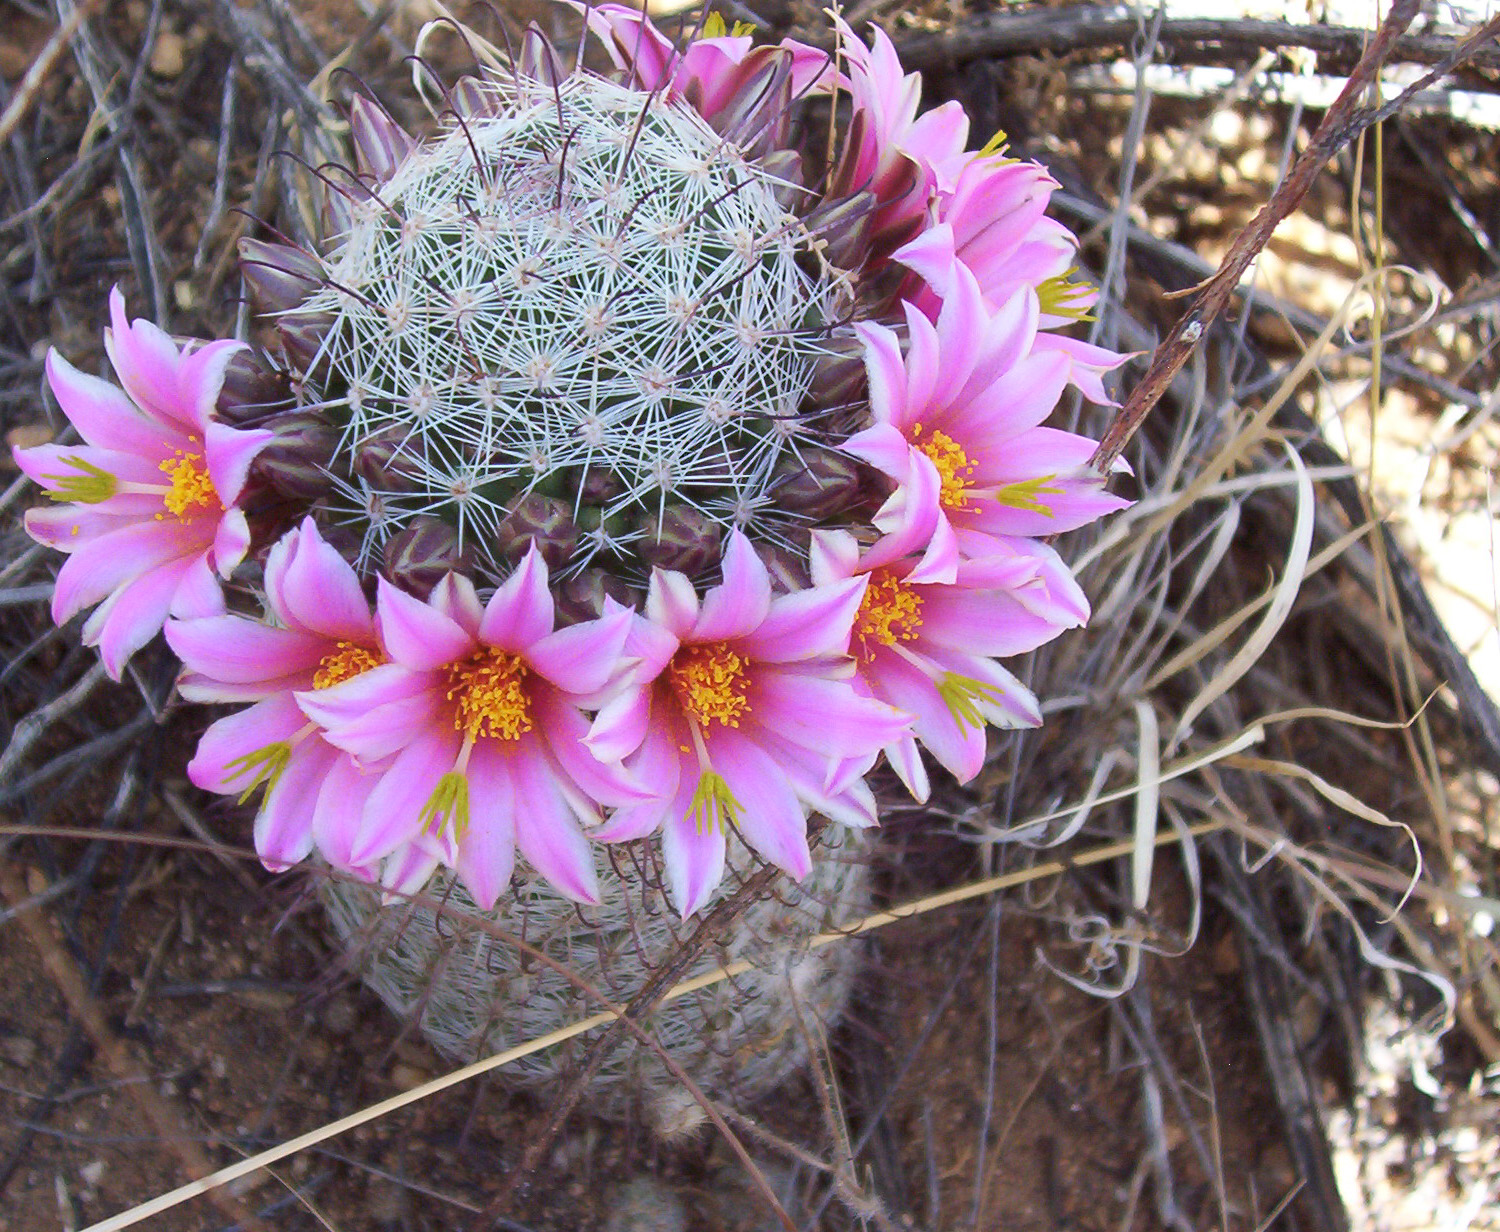 A flowering fishhook pincushion cactus